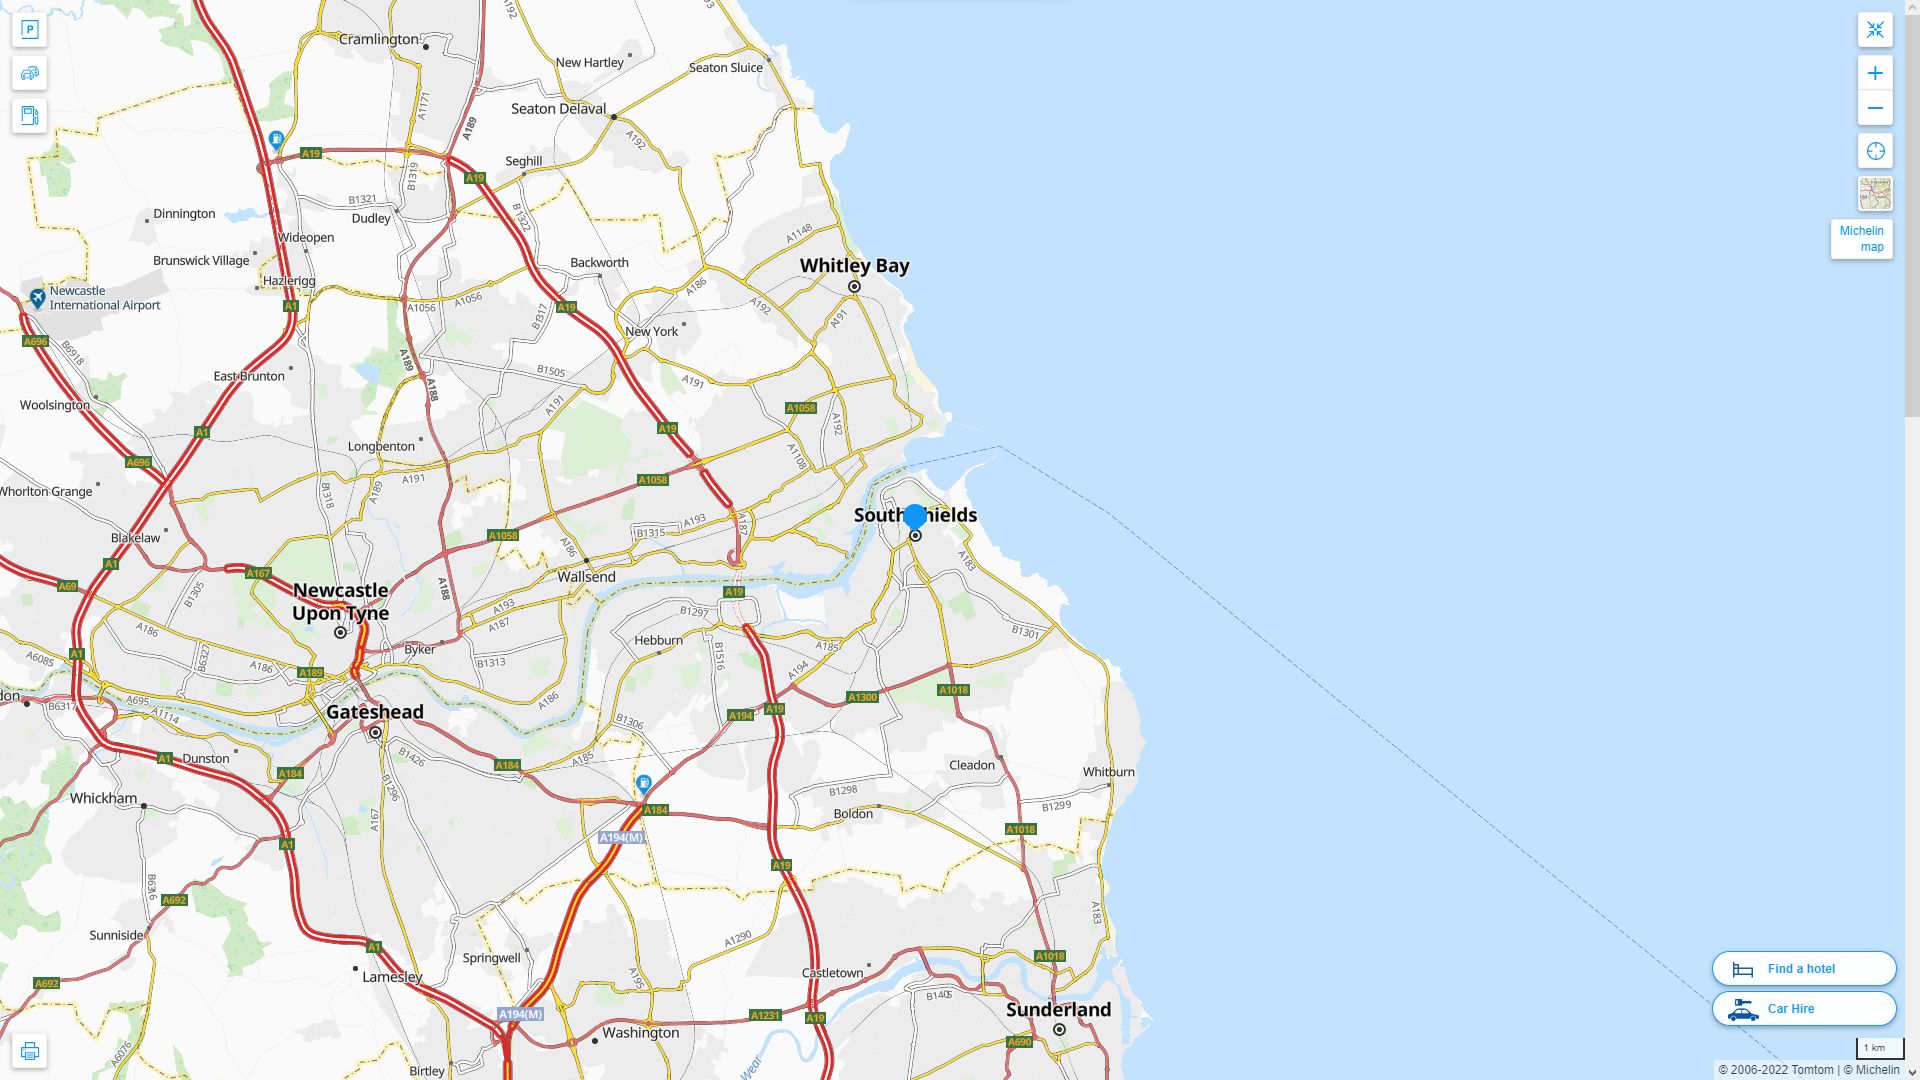 South Shields Royaume Uni Autoroute et carte routiere